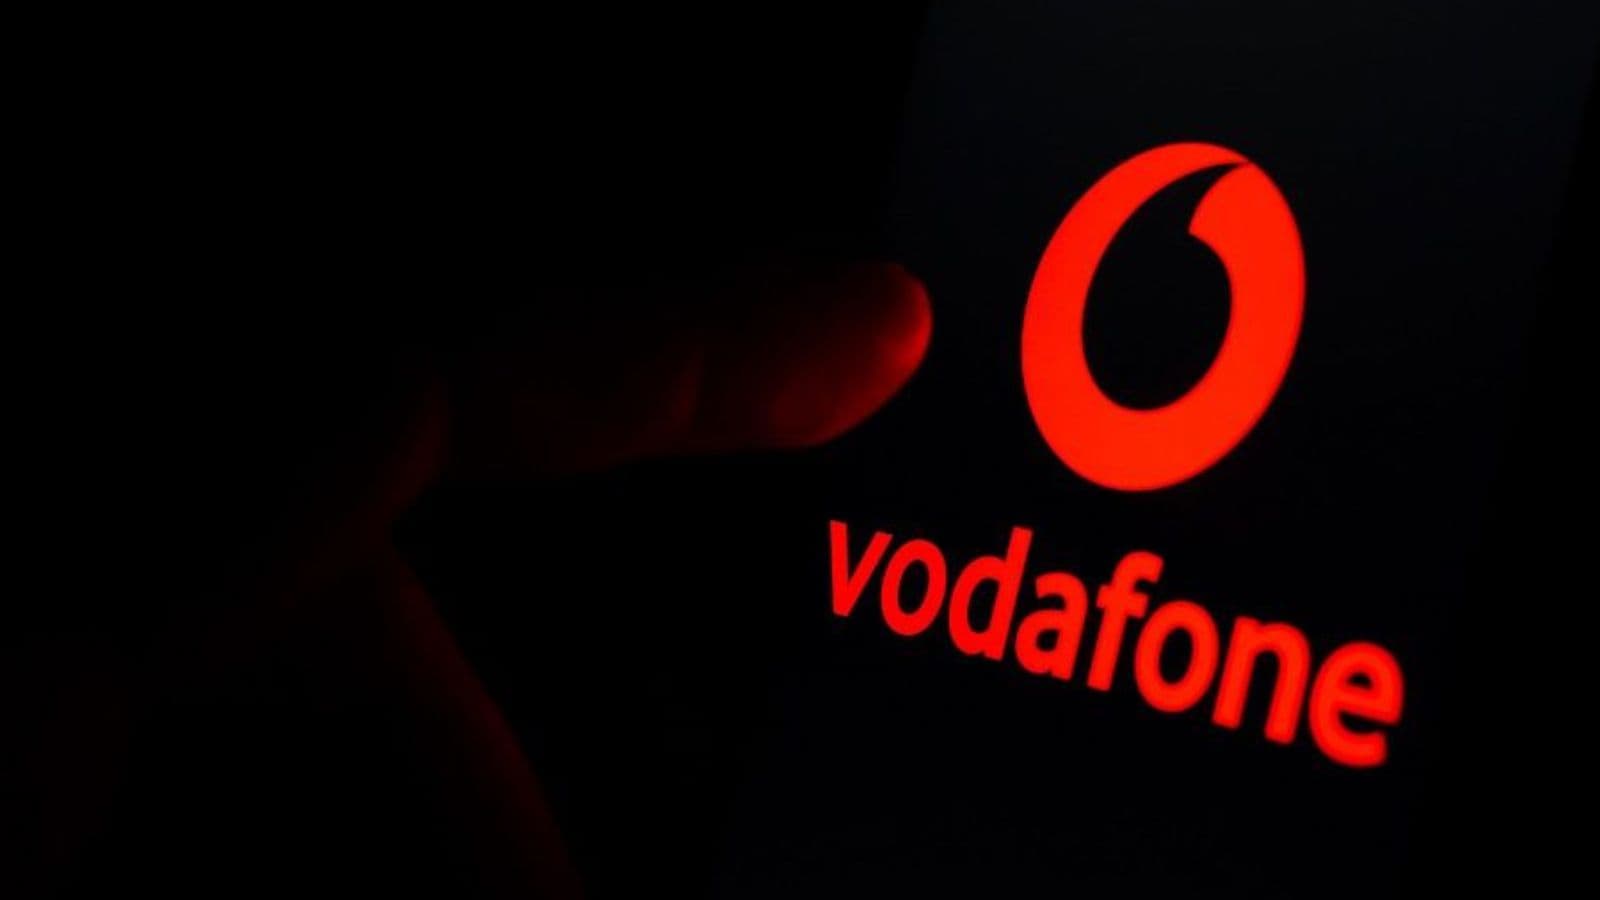 Vodafone e ho. Mobile: queste sono le offerte fino a 200 GB in 5G